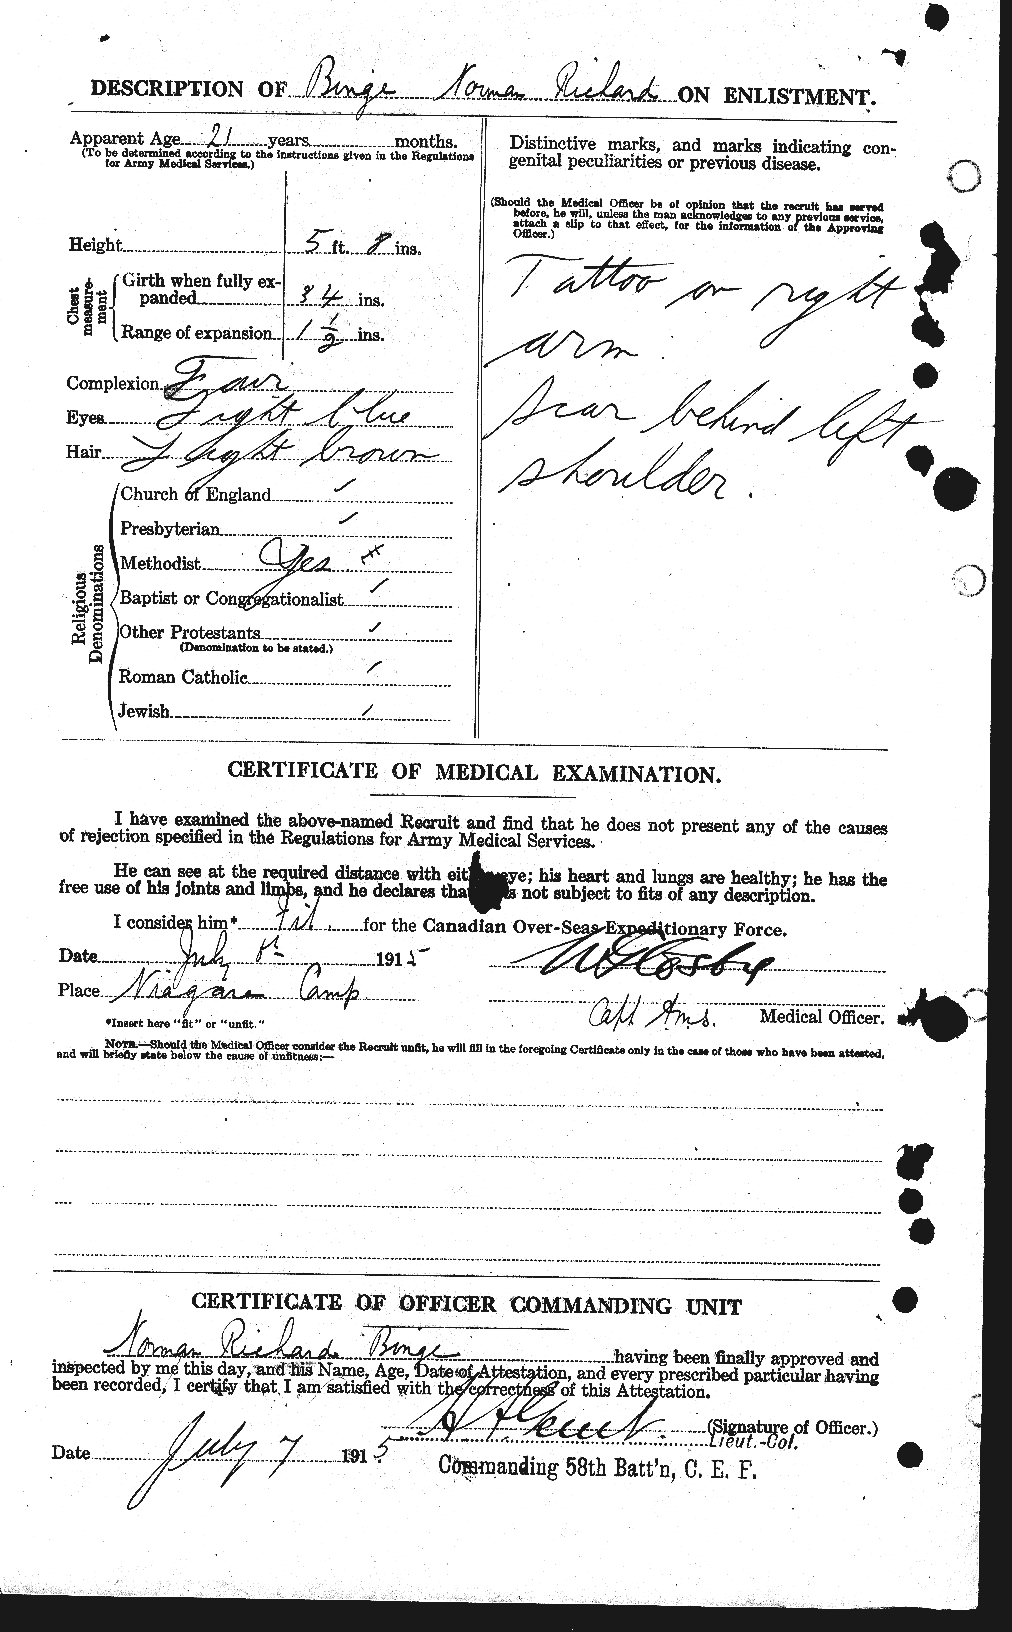 Dossiers du Personnel de la Première Guerre mondiale - CEC 243838b